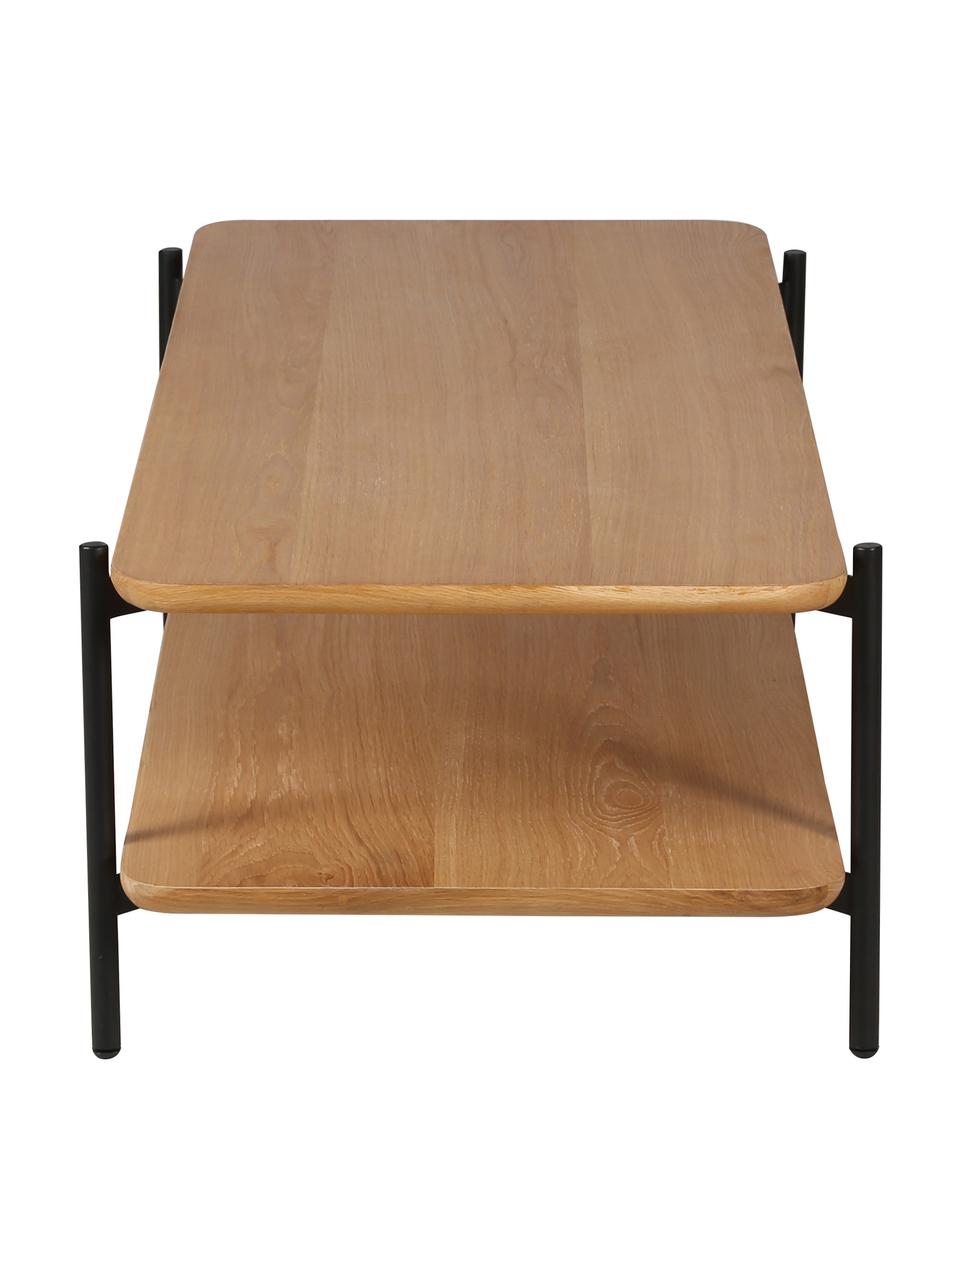 Konferenčný stolík s dubovou dyhou Easy, Čierna, hnedá, Š 120 x V 37 cm